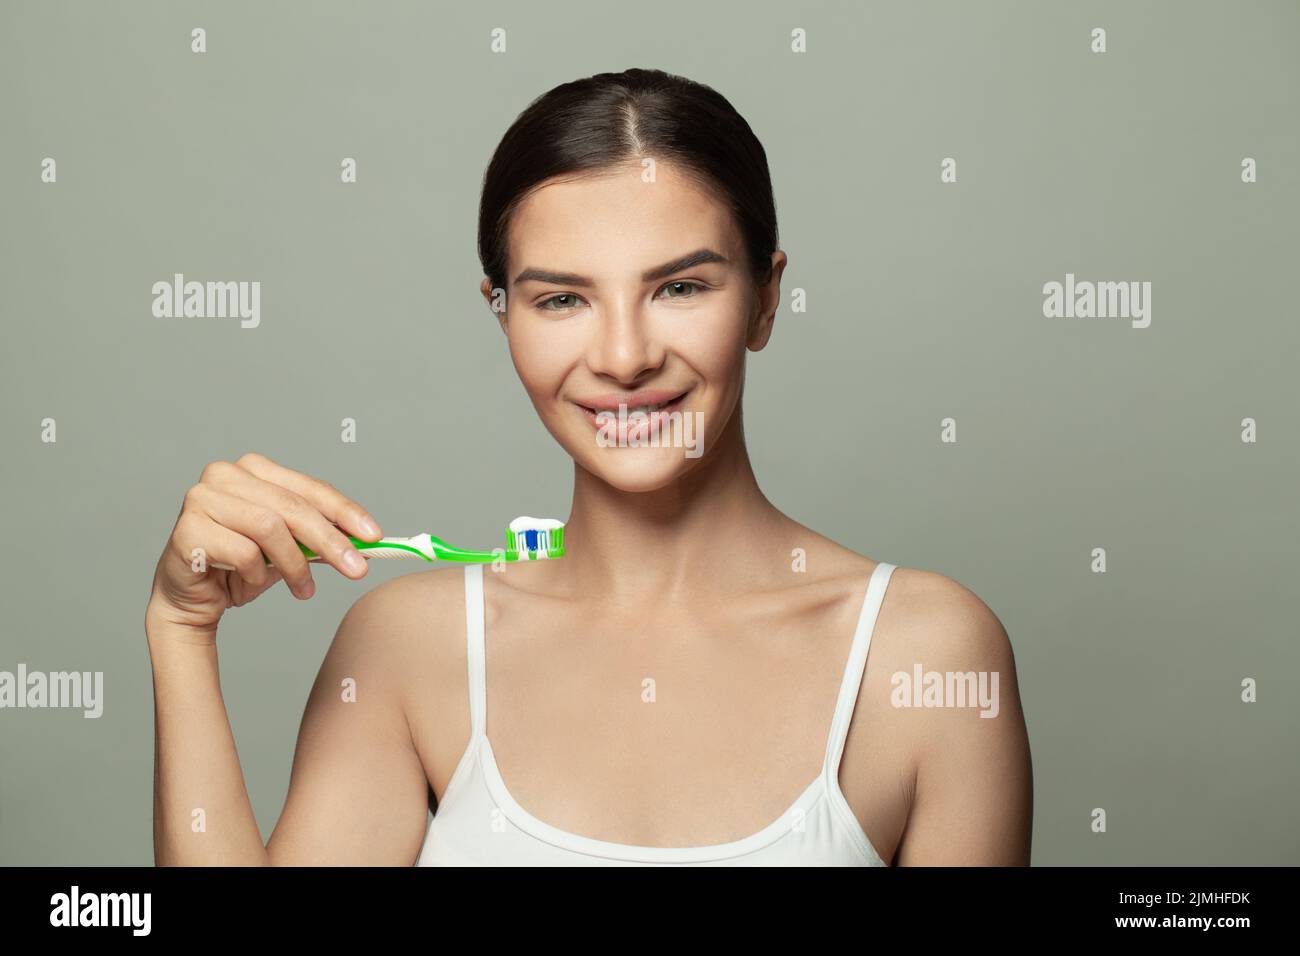 Retrato de belleza de una feliz y bonita mujer morena cepillándose los dientes con un cepillo de dientes y mirando la cámara sobre fondo blanco Foto de stock